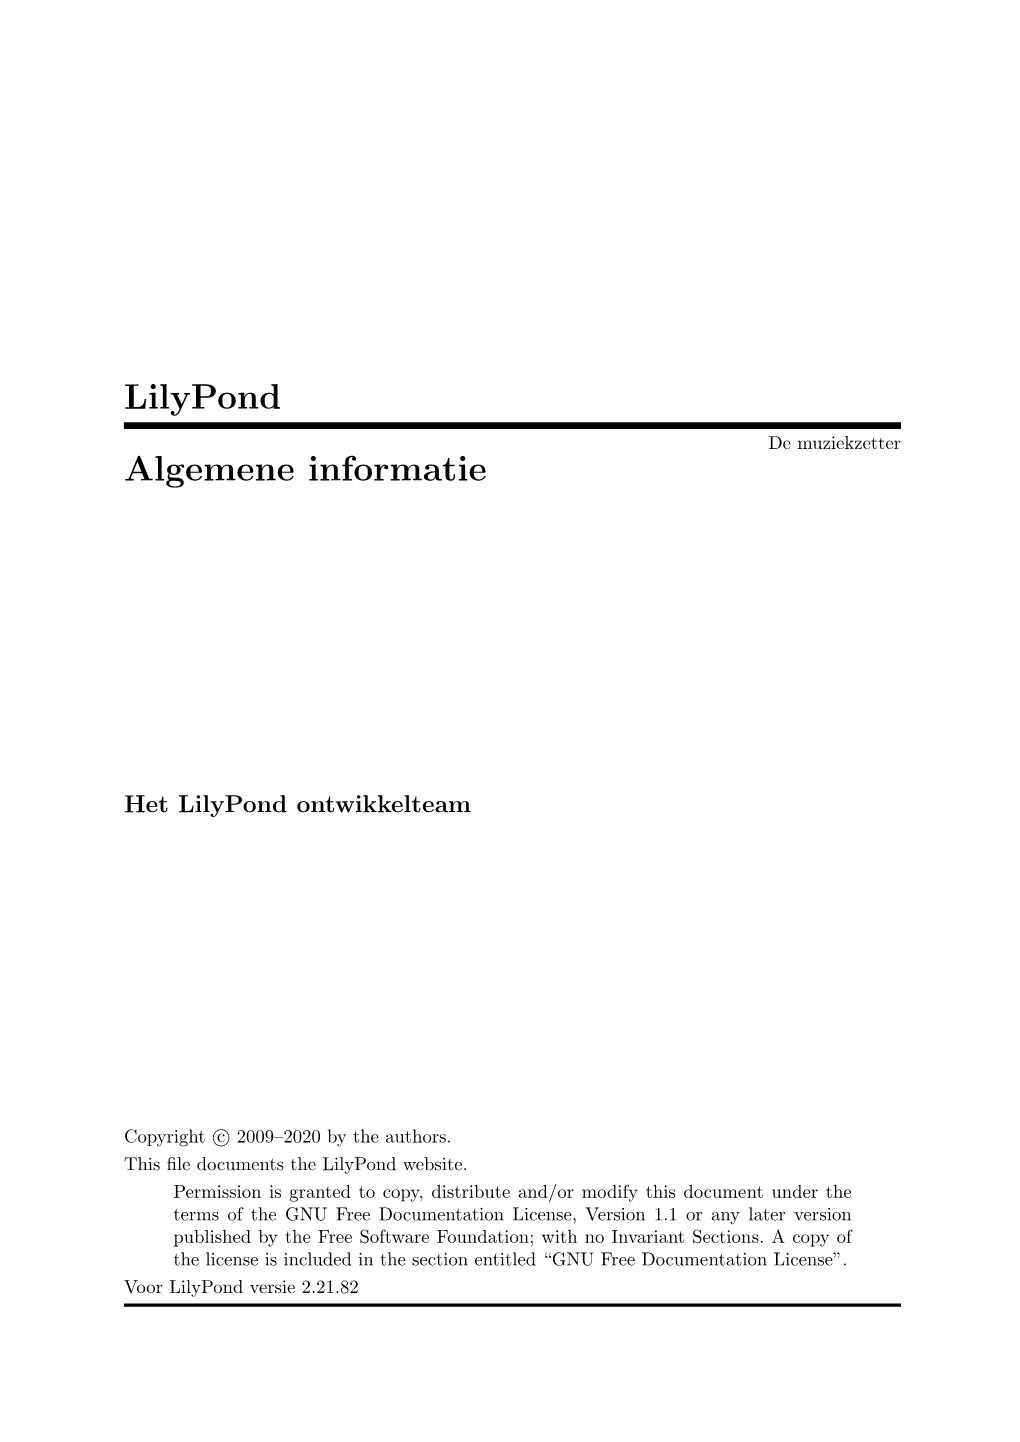 Lilypond Algemene Informatie